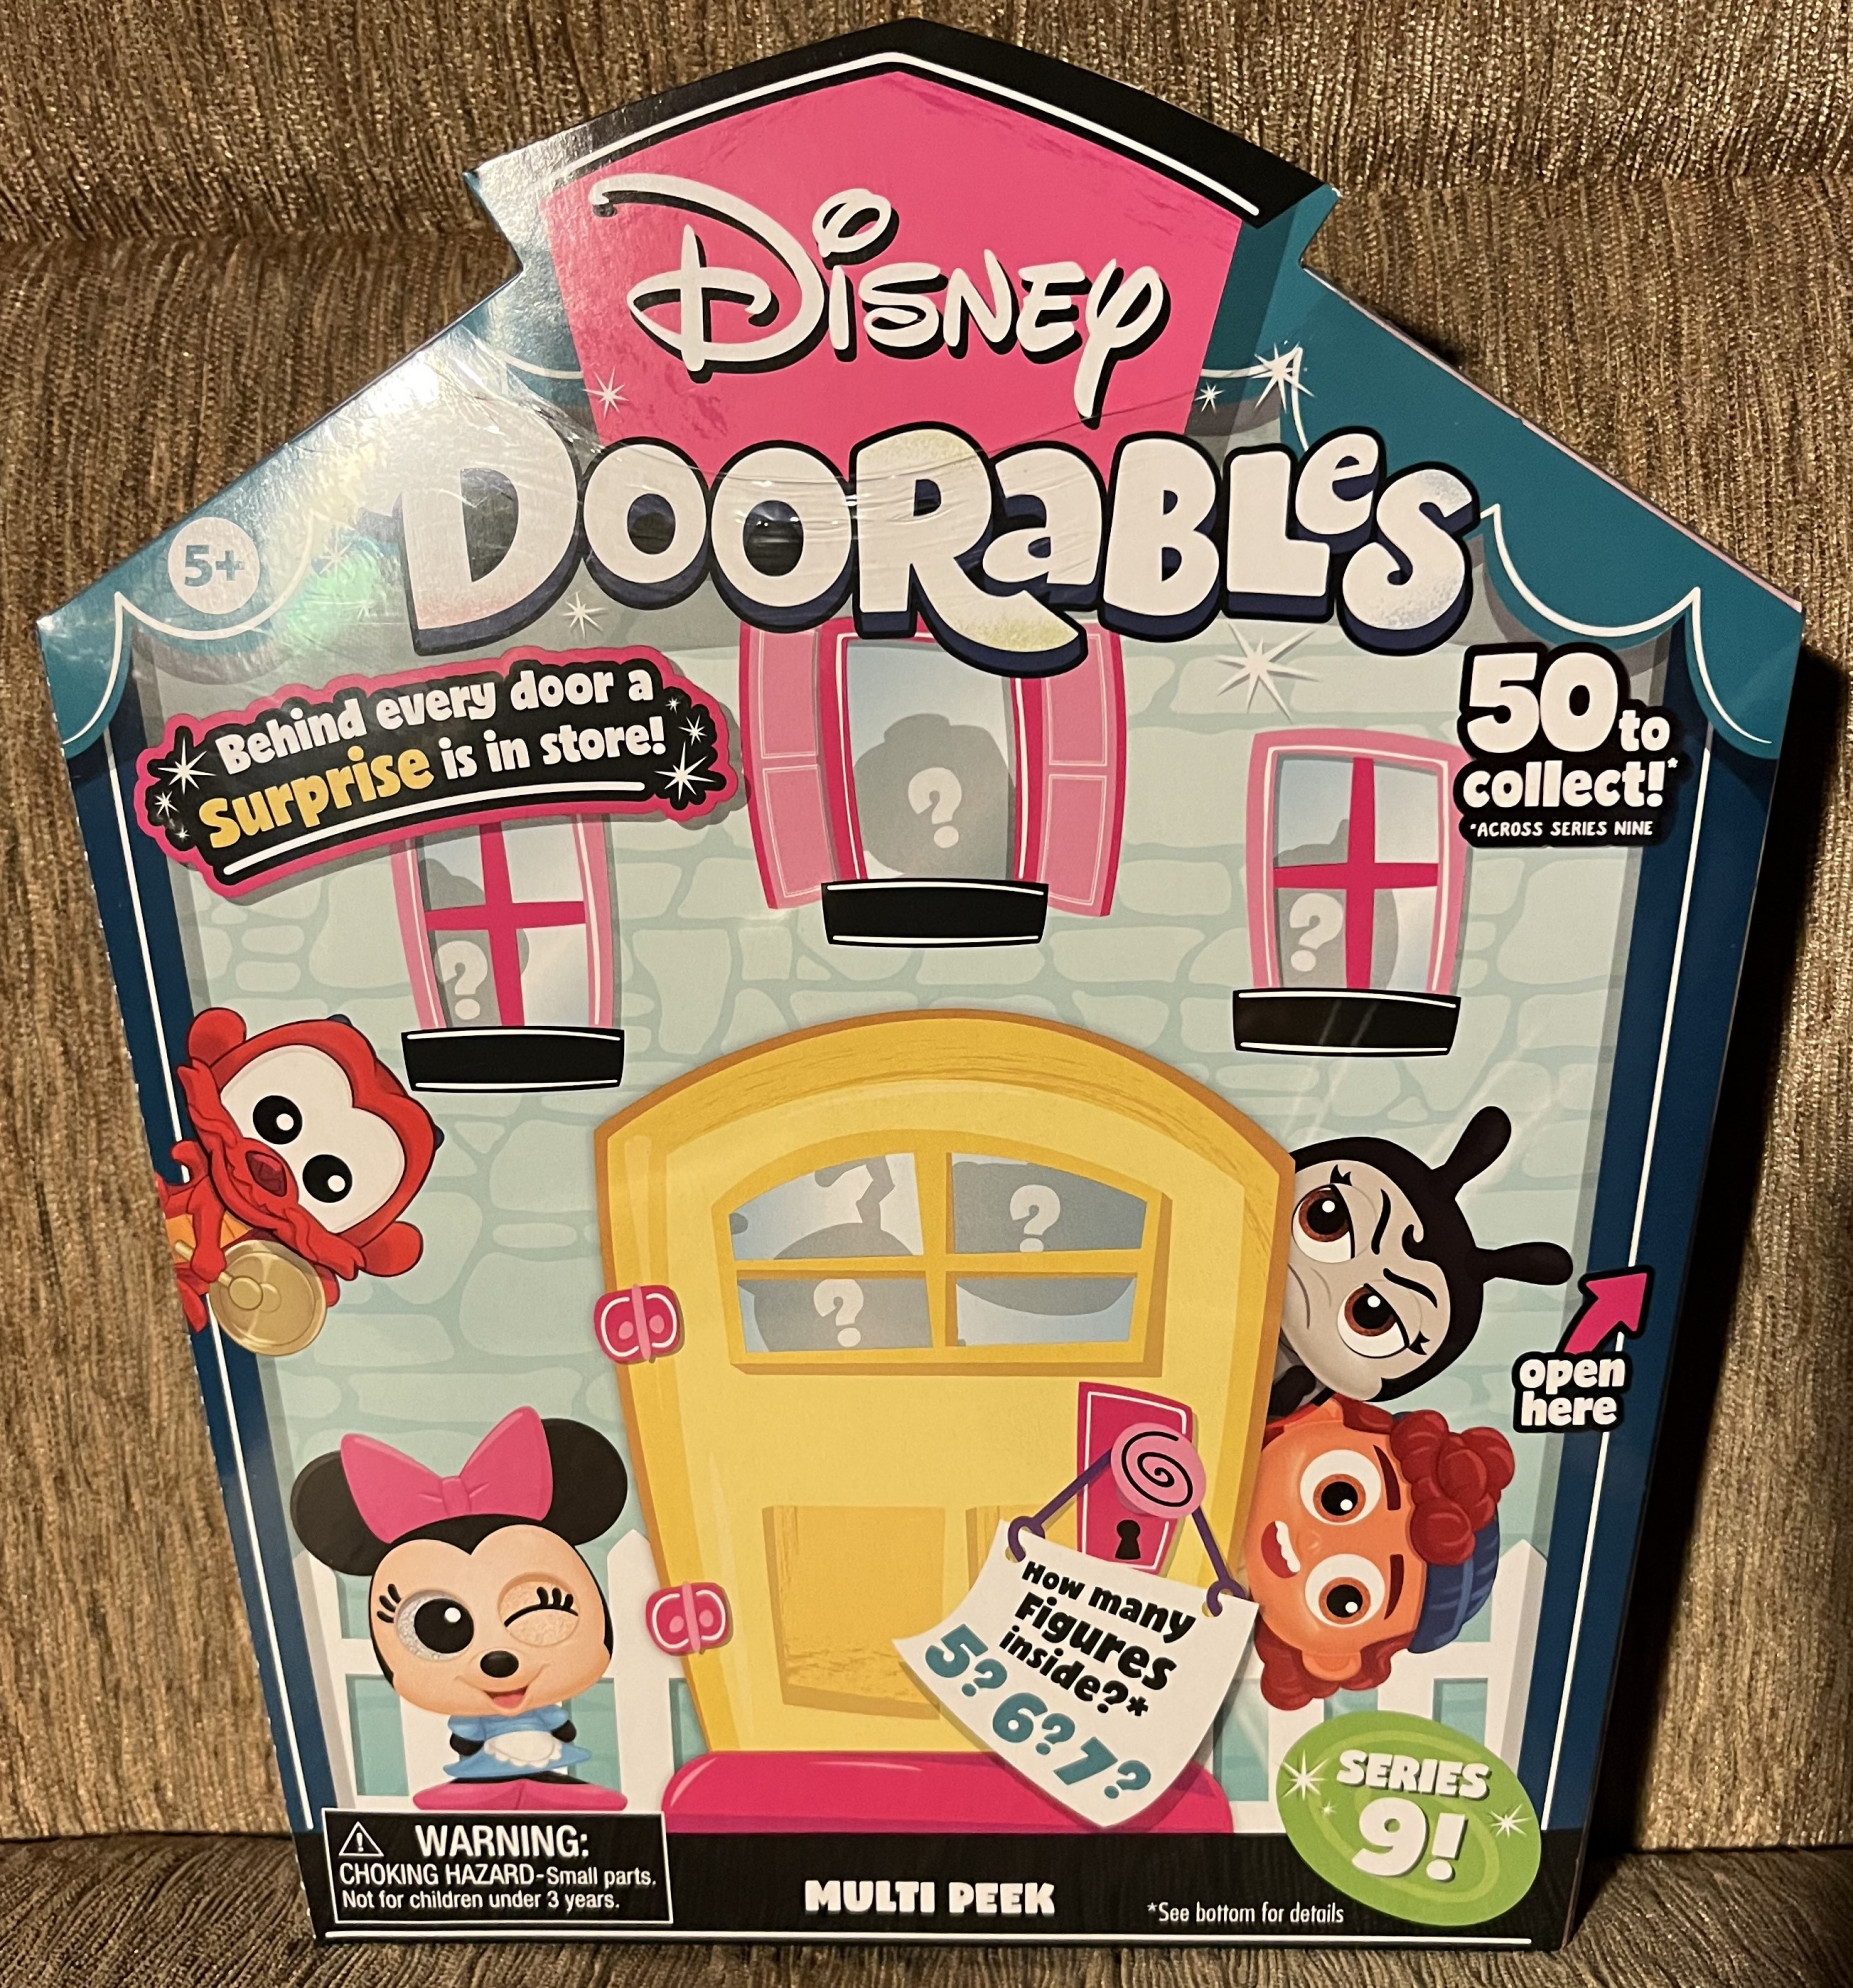 Disney Doorables Series 7 FULL Collection! COMPLETE 50 DOORABLES